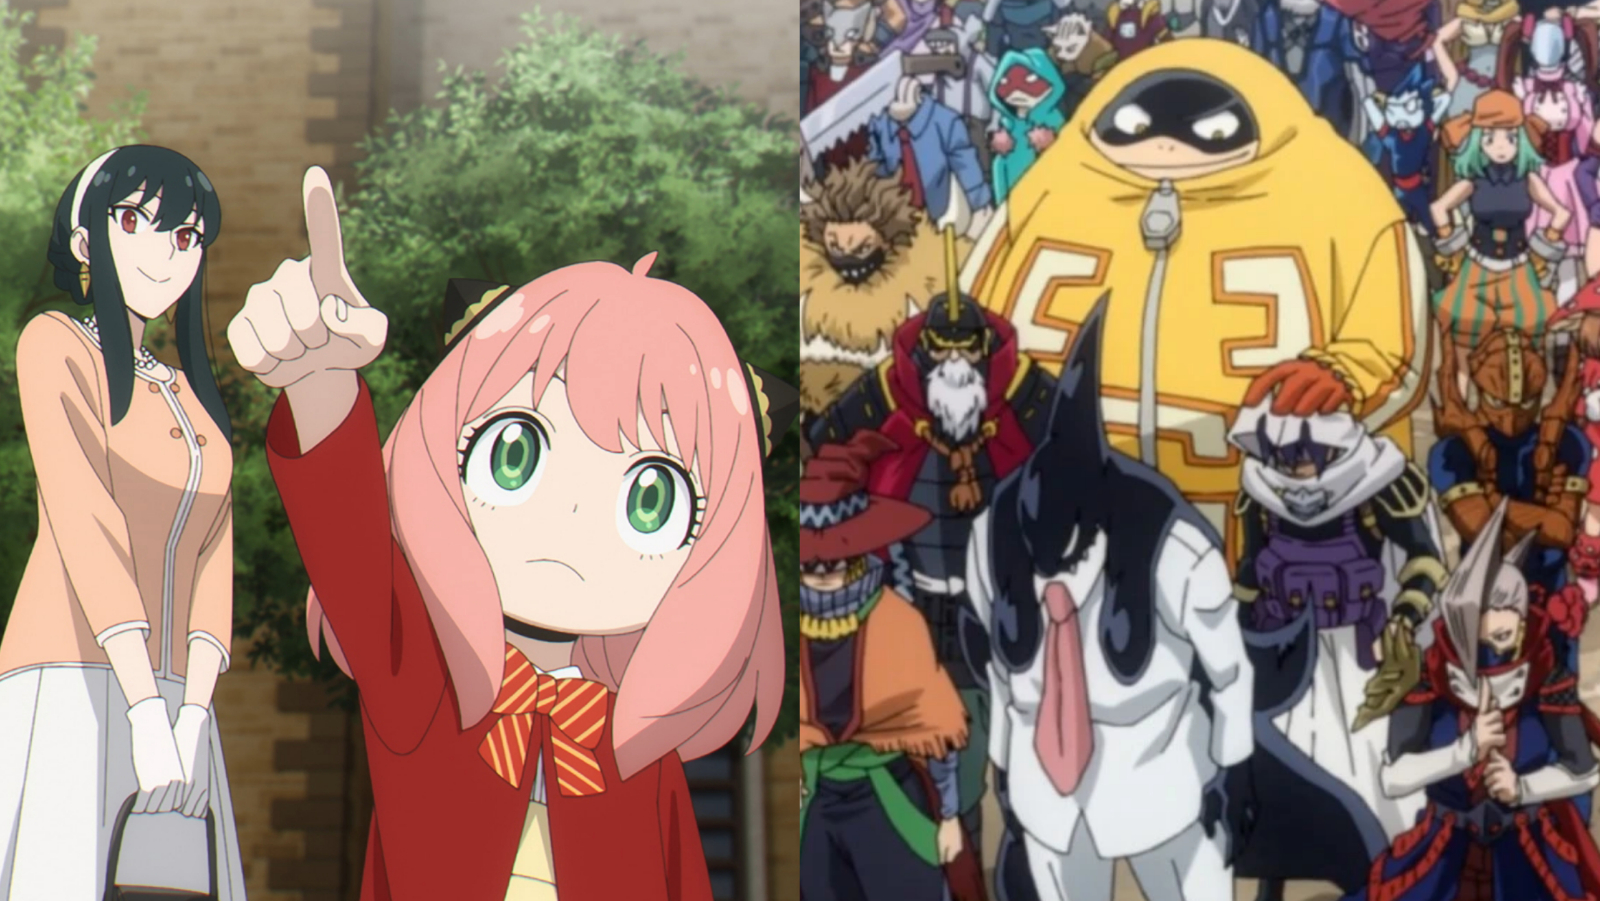 Watch Anime To Your Eternity Online: Episode Schedule - OtakuKart